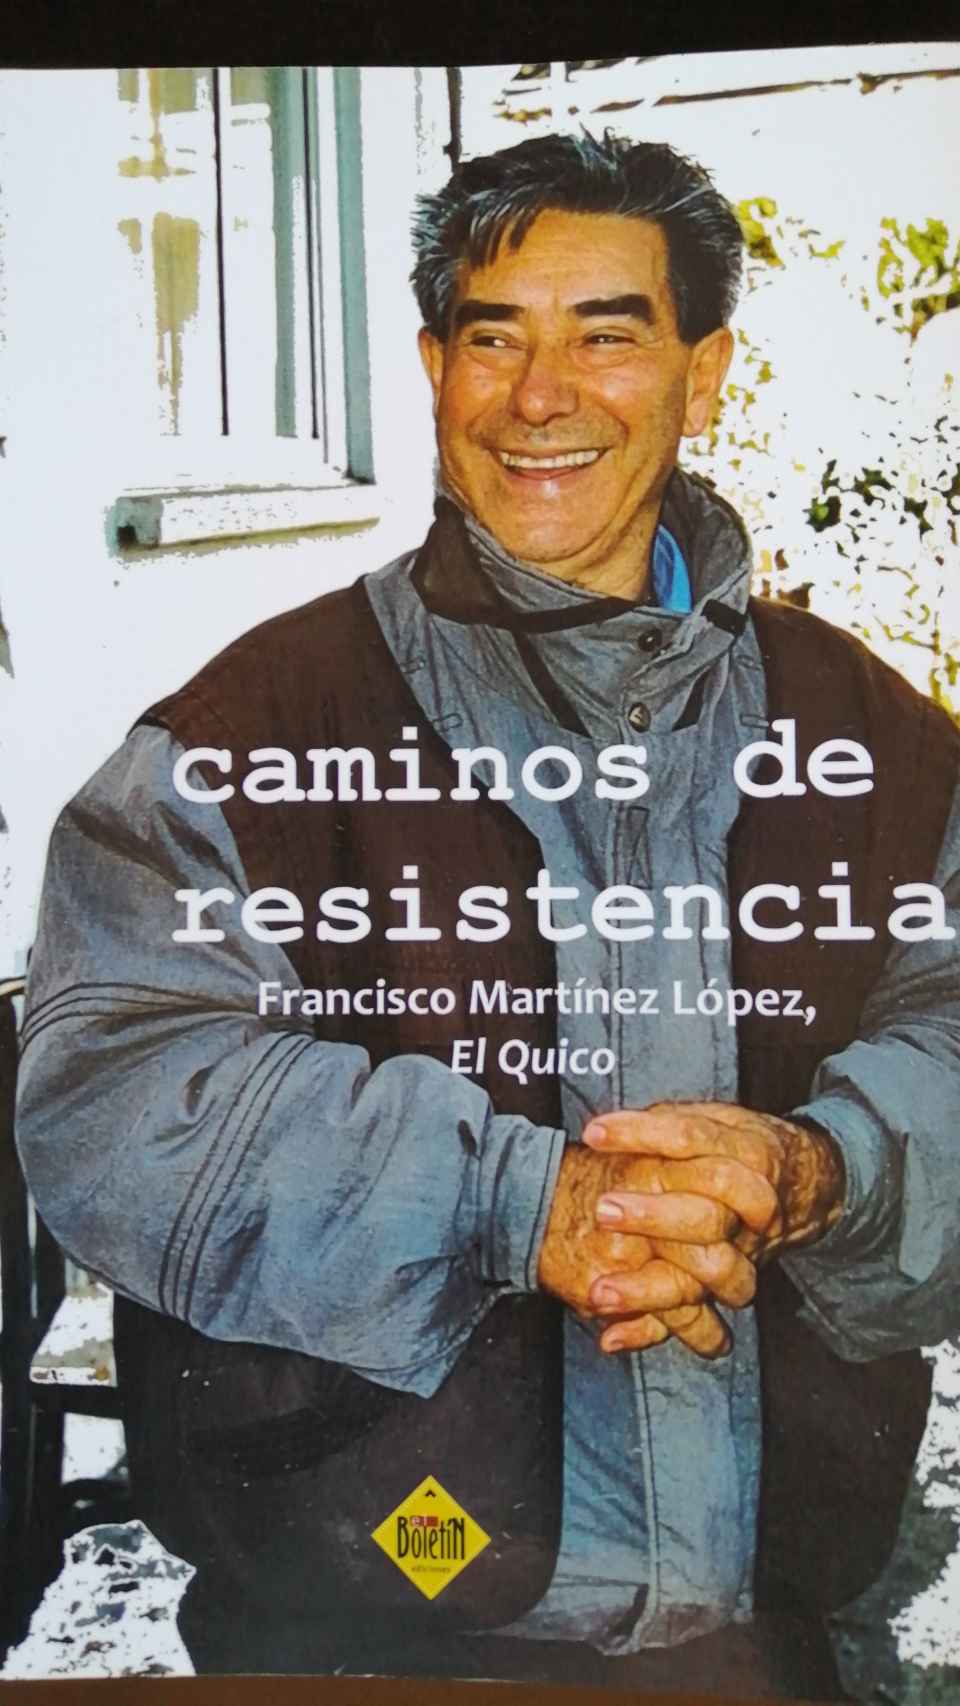 Portada del libro de Francisco Martínez López, El Quico, donde aparece en una foto de 2002.